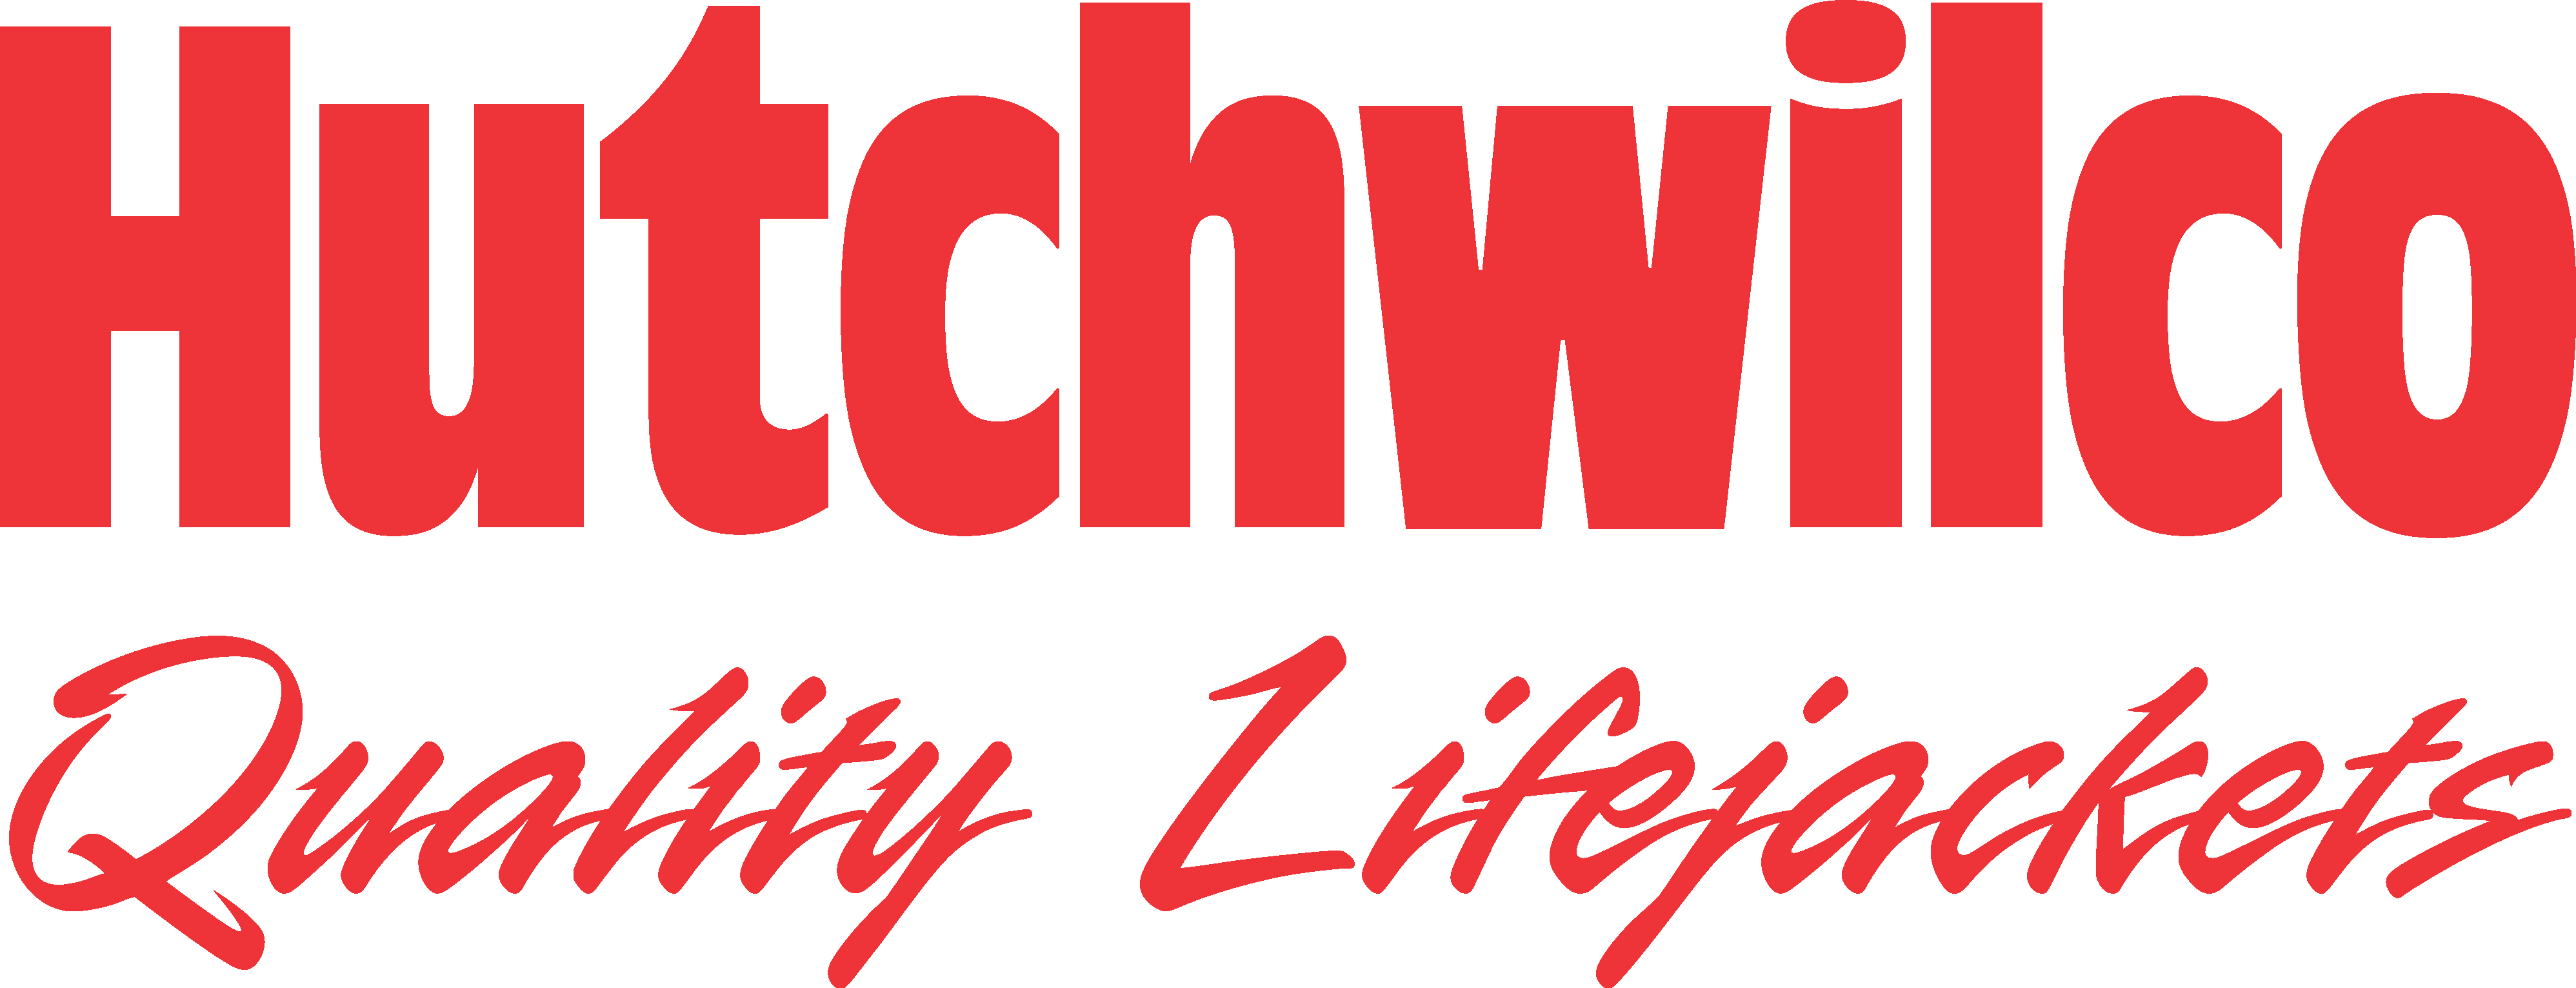 Hutchwilco logo